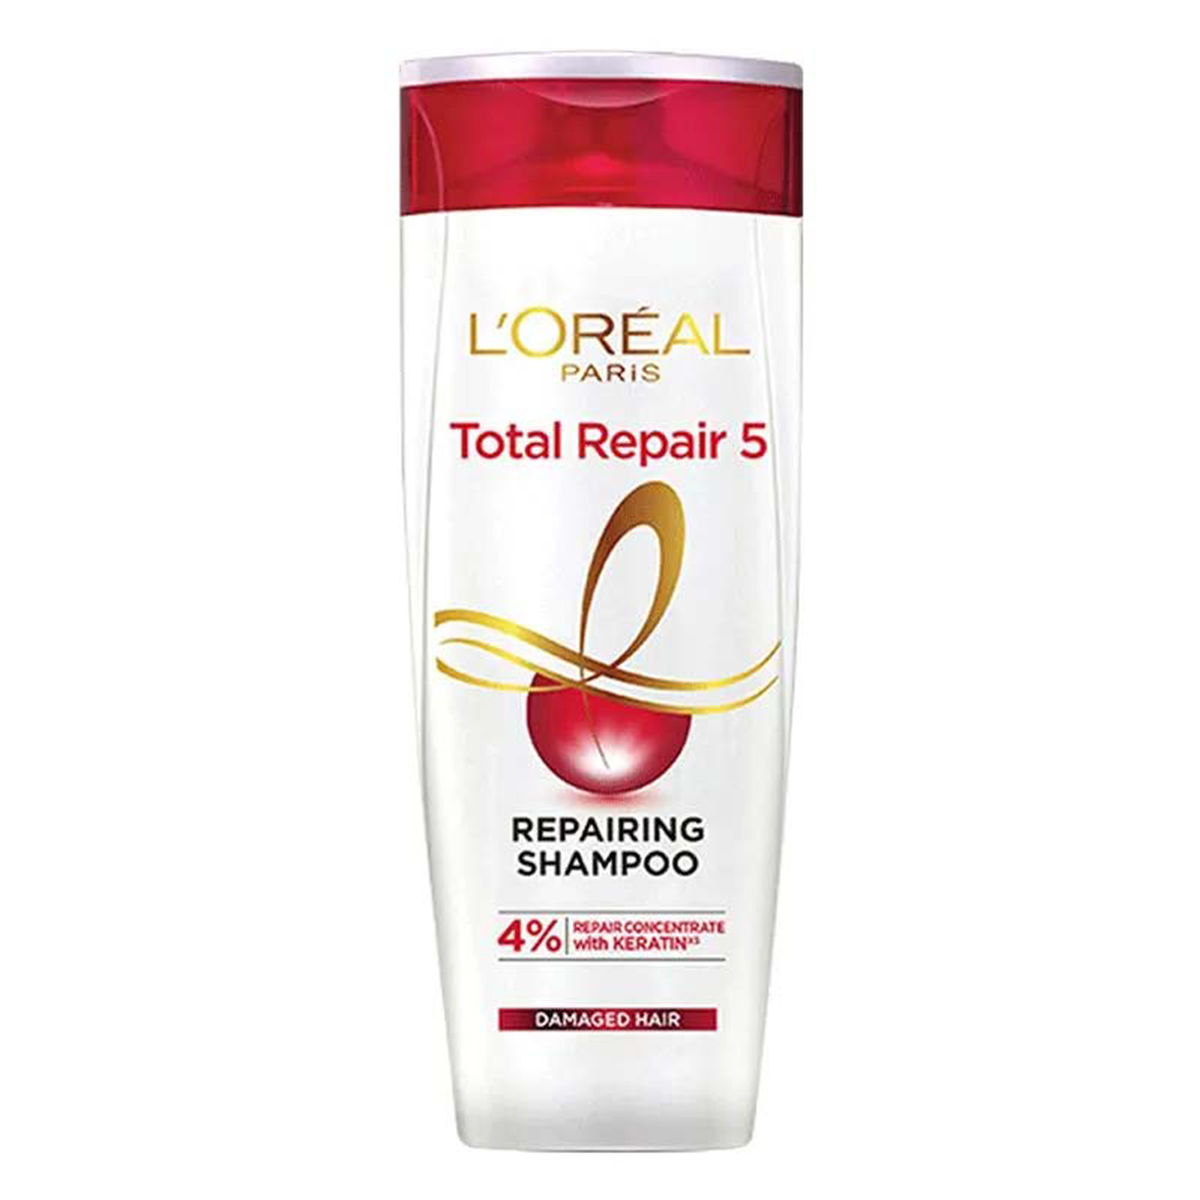 Buy L'Oreal Paris Total Repair 5 Shampoo, 192.5 ml Online